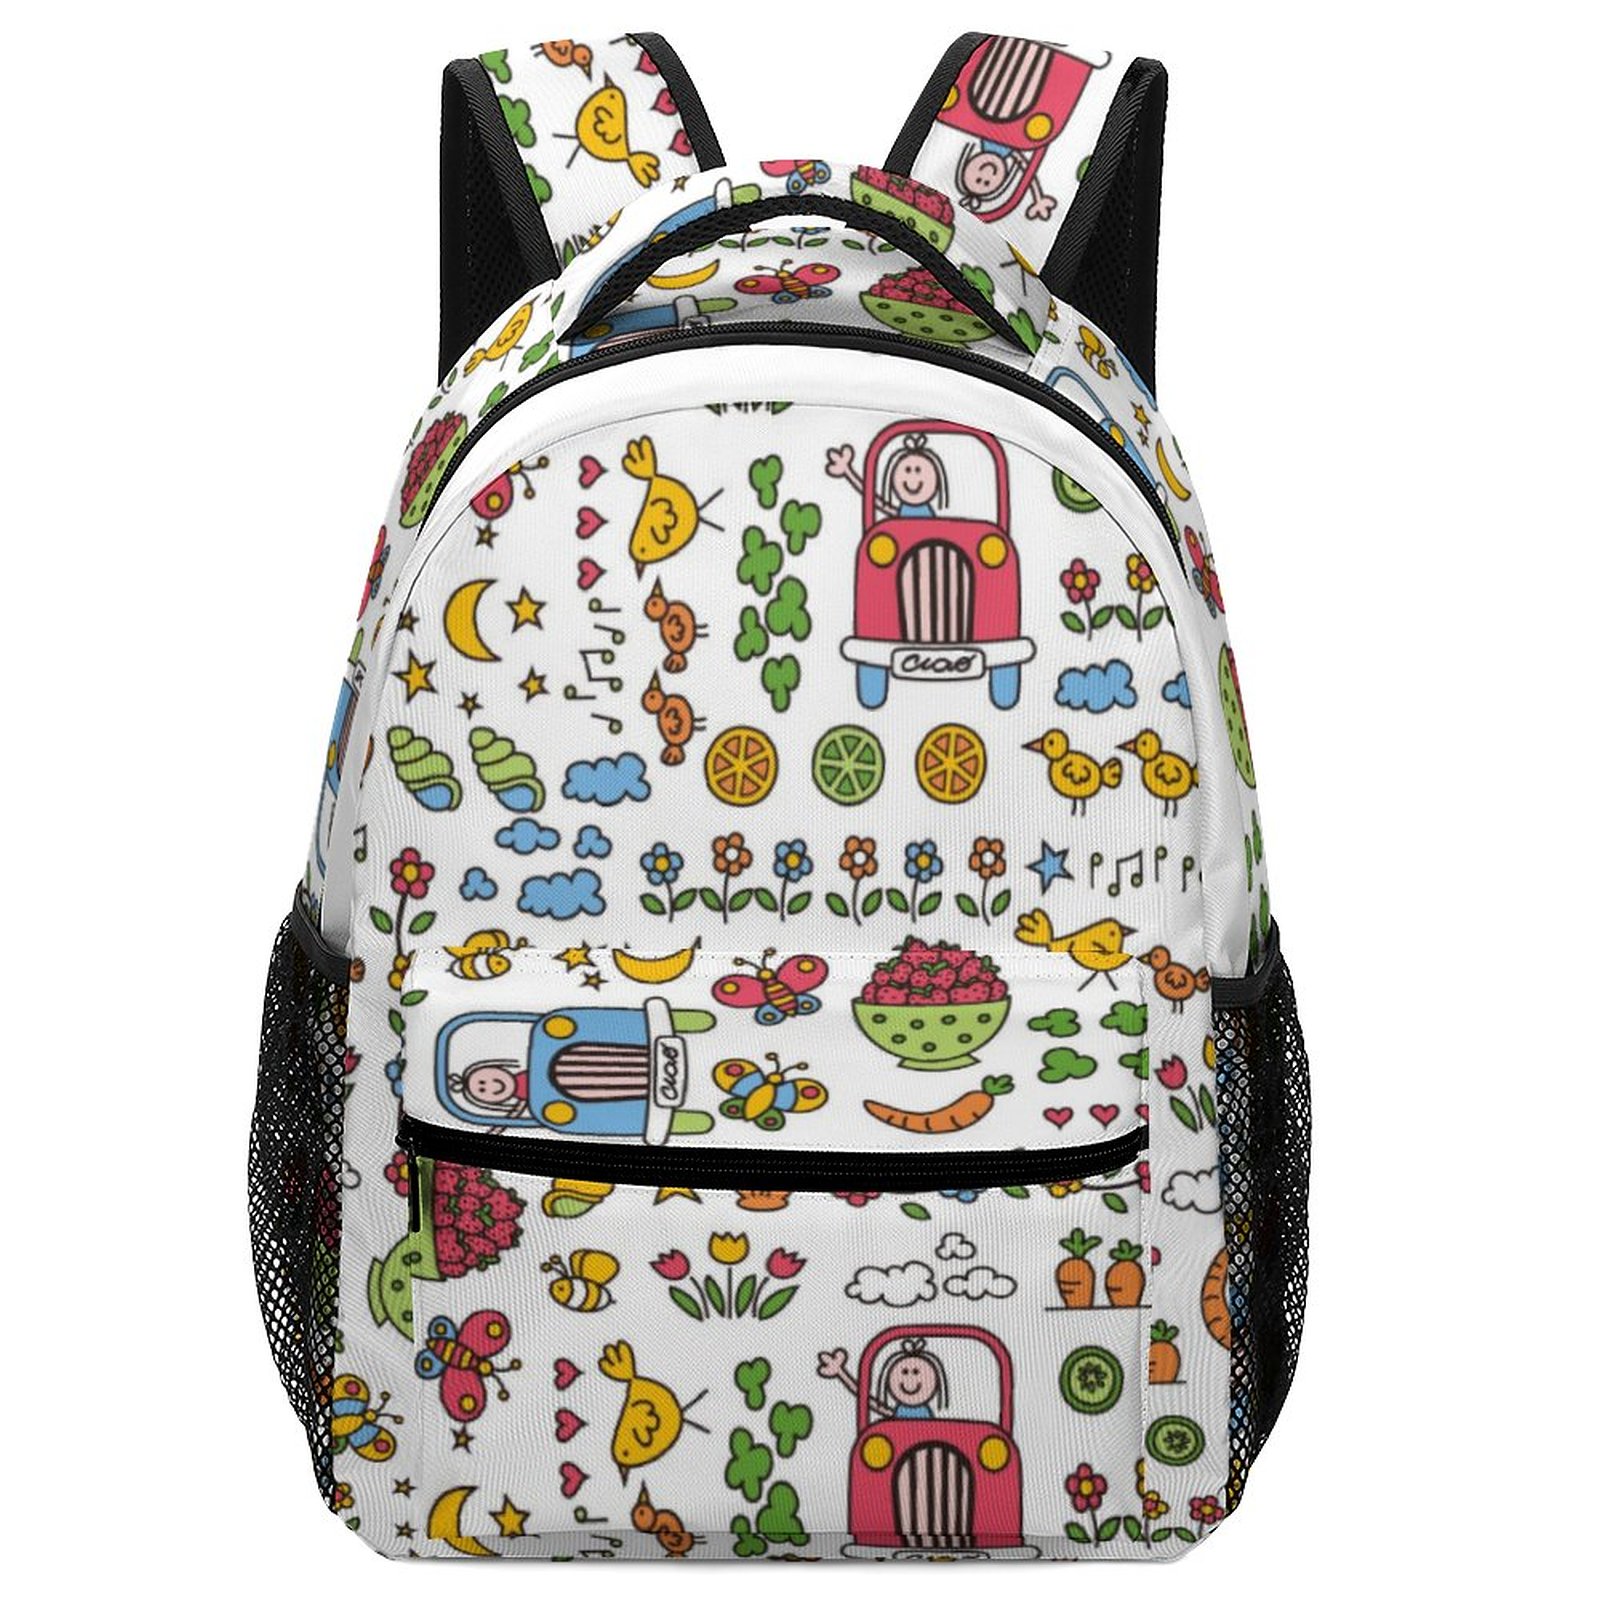 Buy Printed Backpack | Custom Backpack | Personalized Backpacks